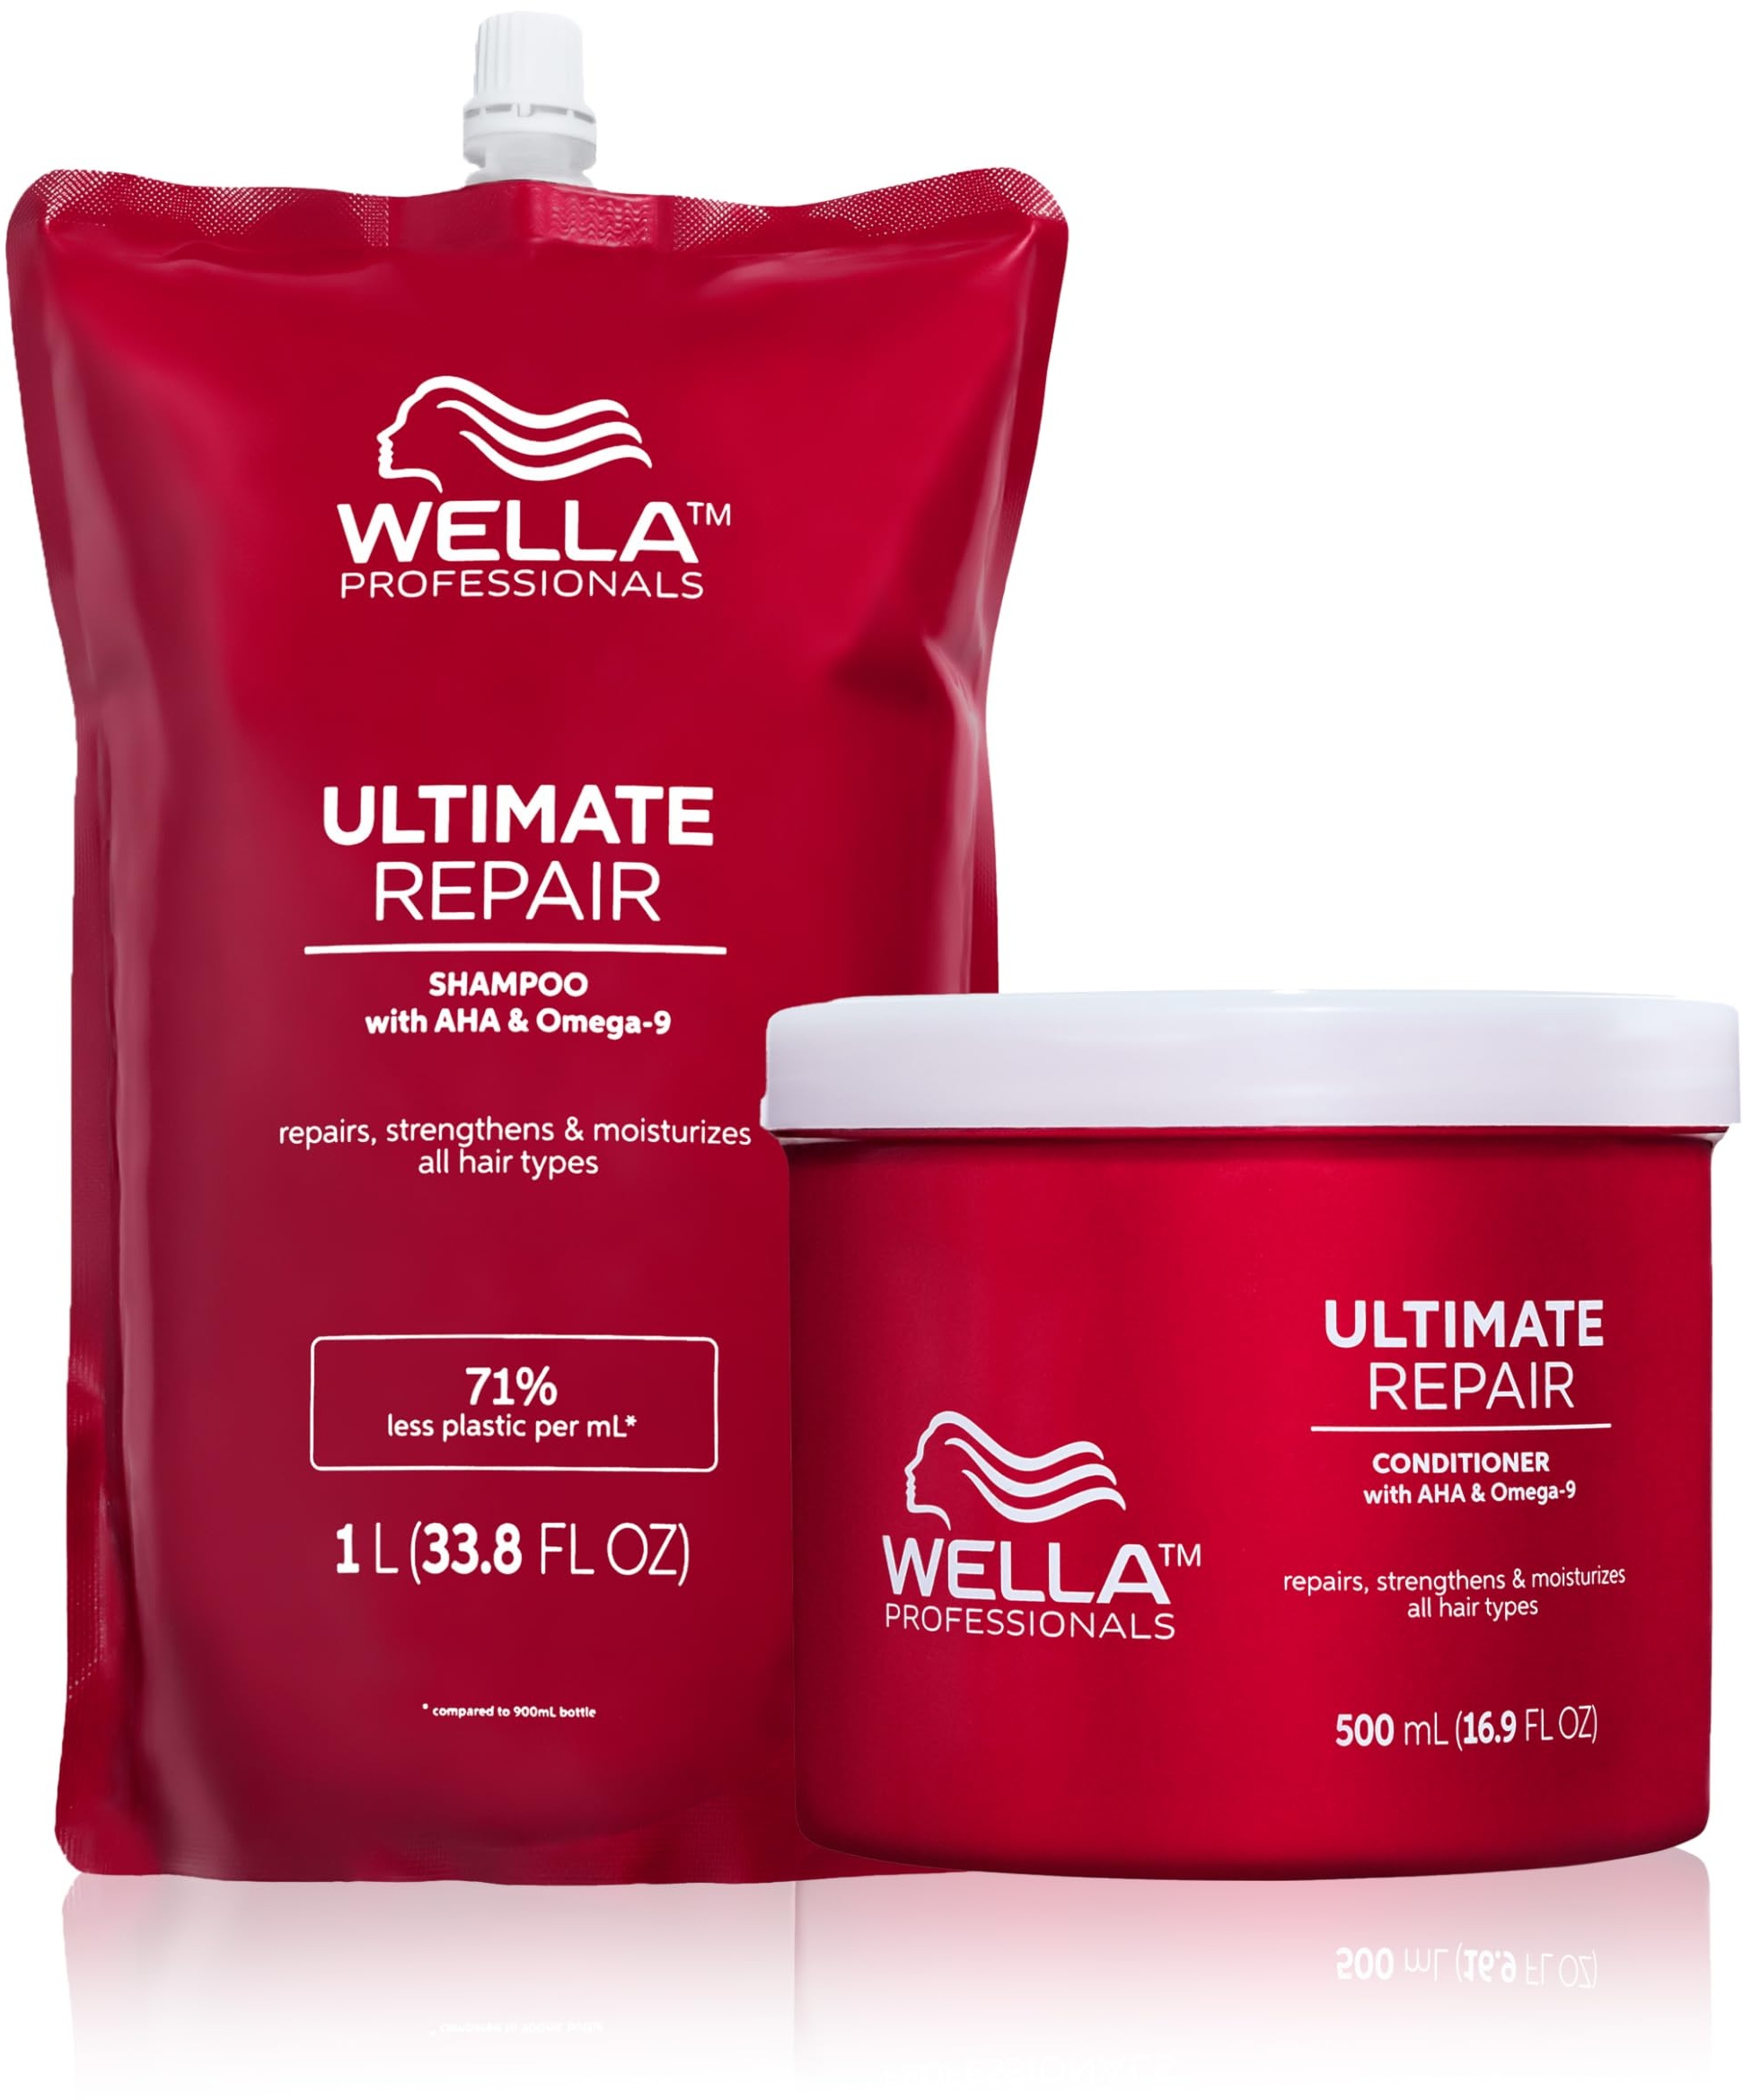 Wella Professionals Ultimate Repair Vorteils-Set – Repair Shampoo zur Tiefenreinigung & reparierende Spülung mit Omega 9 – 1 L Feuchtigkeitsshampoo Refill & 500 ml Conditioner